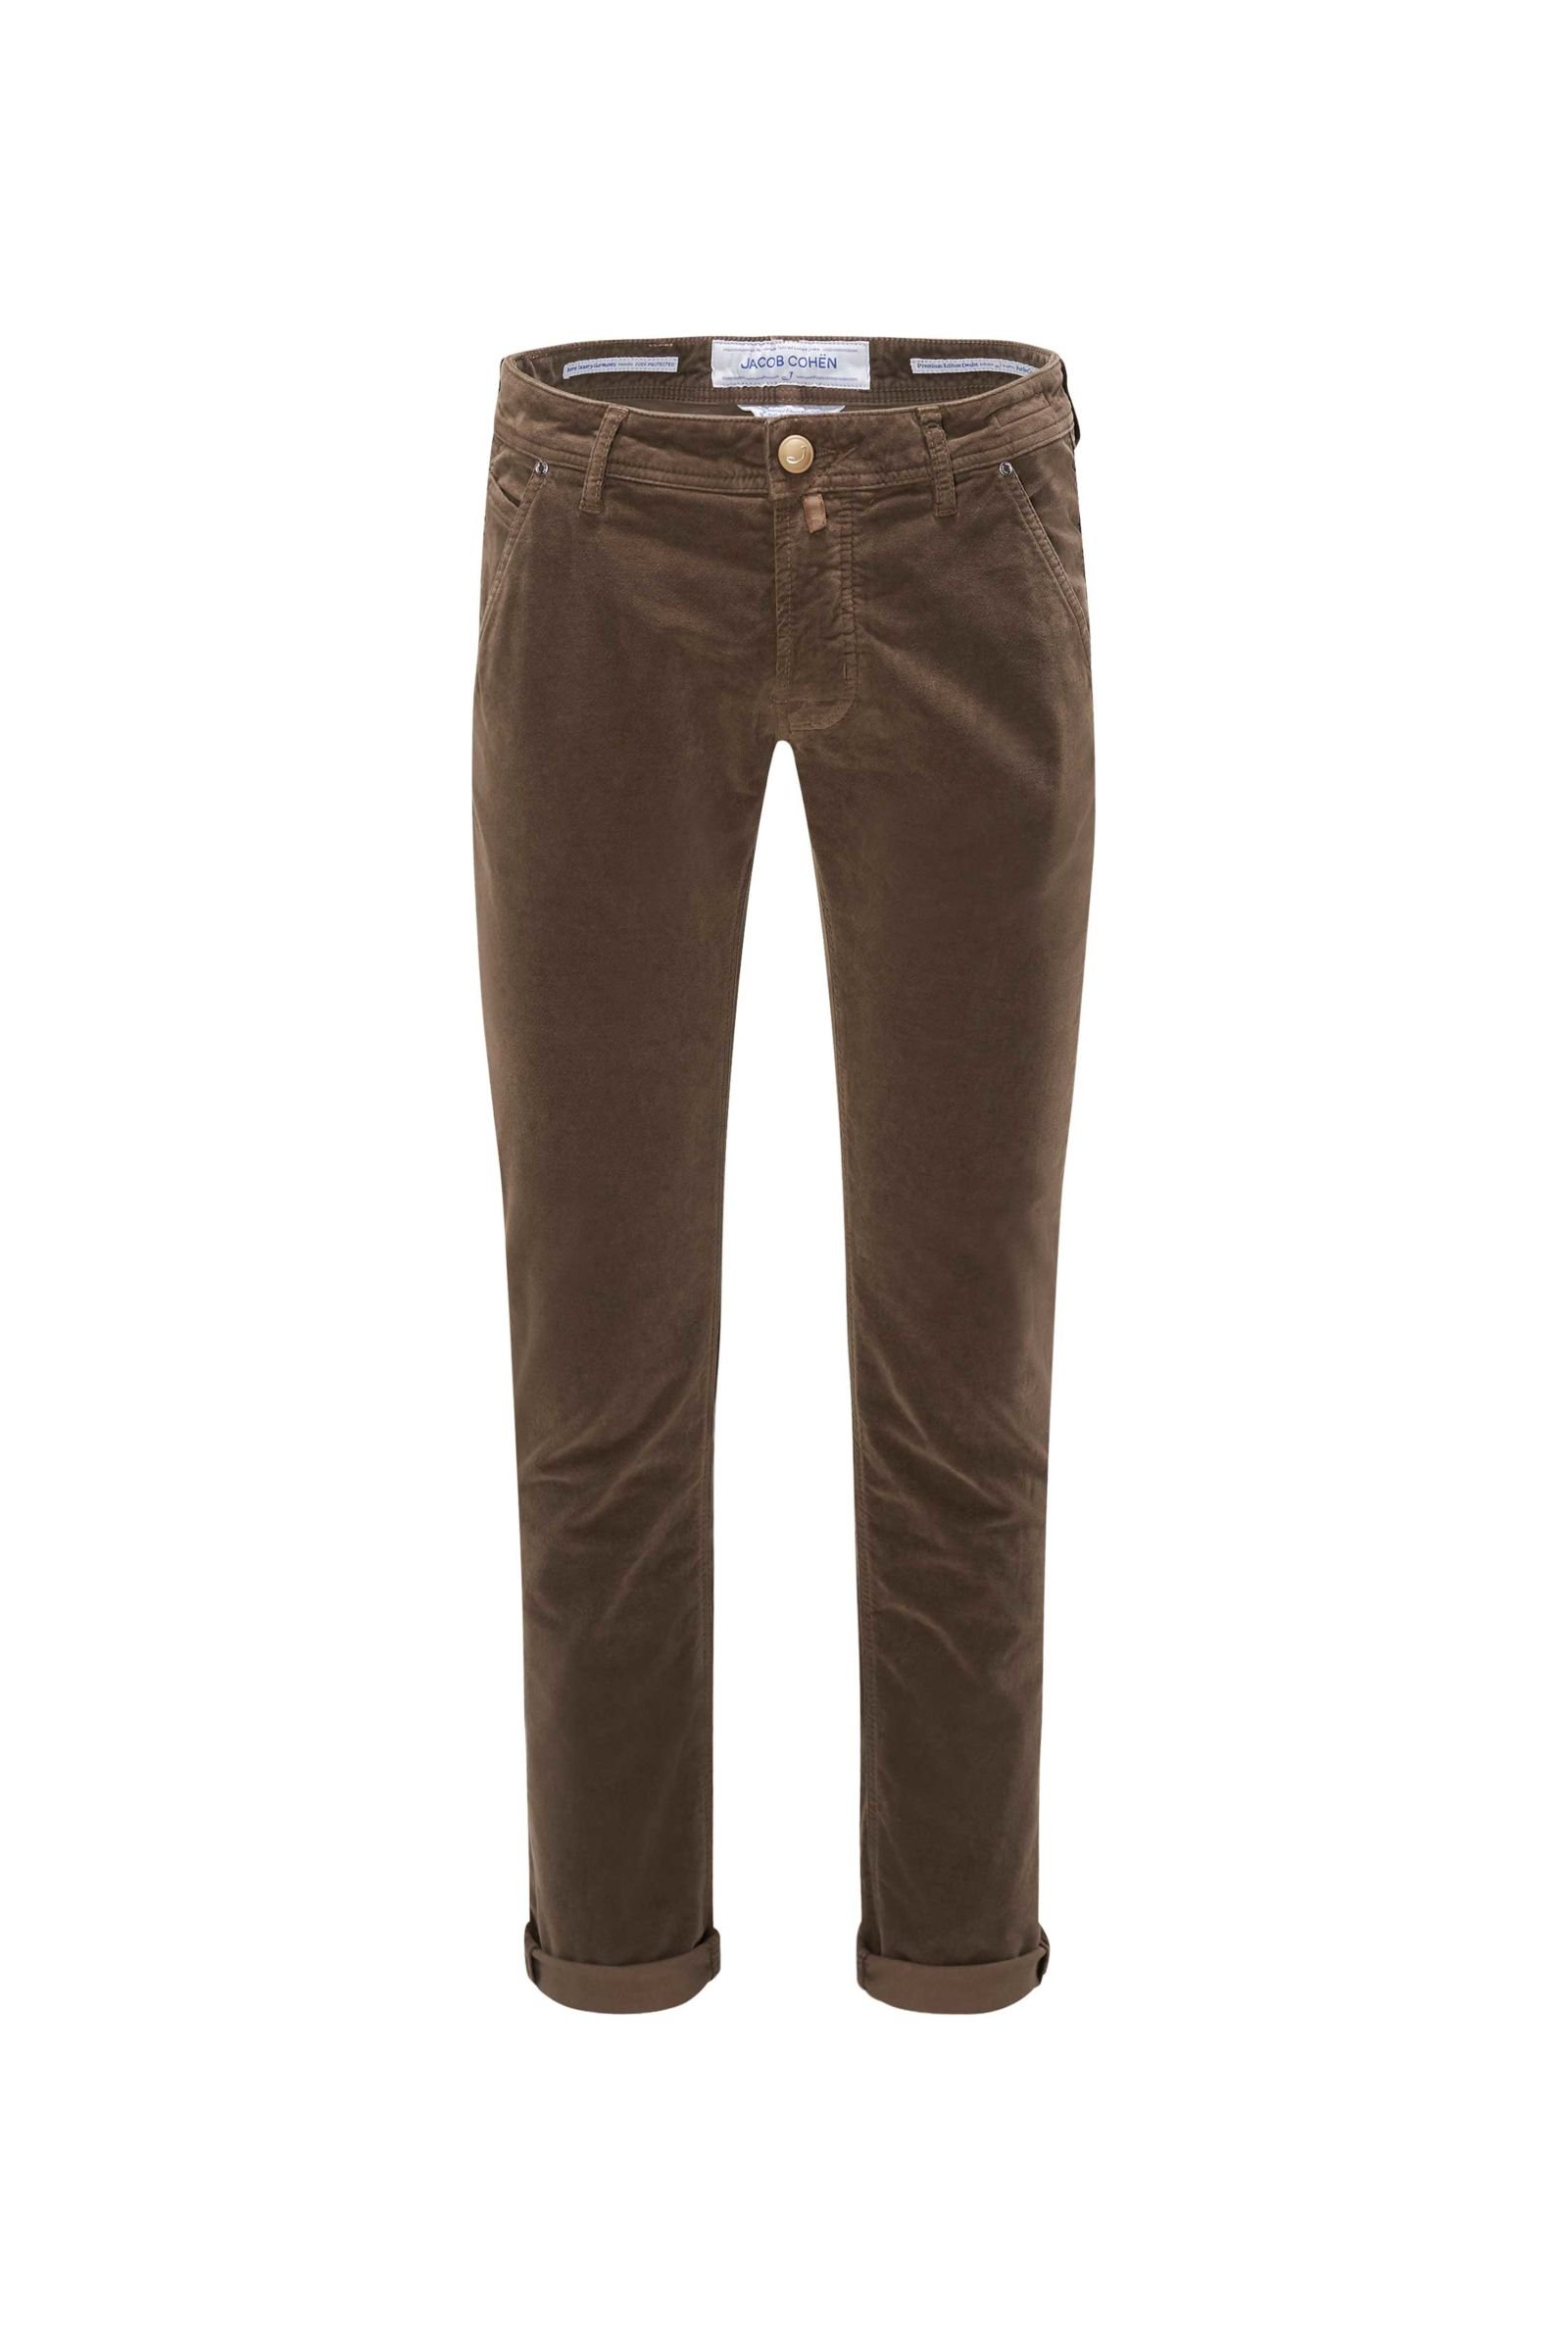 Fustian trousers 'J613 Comfort Slim Fit' brown